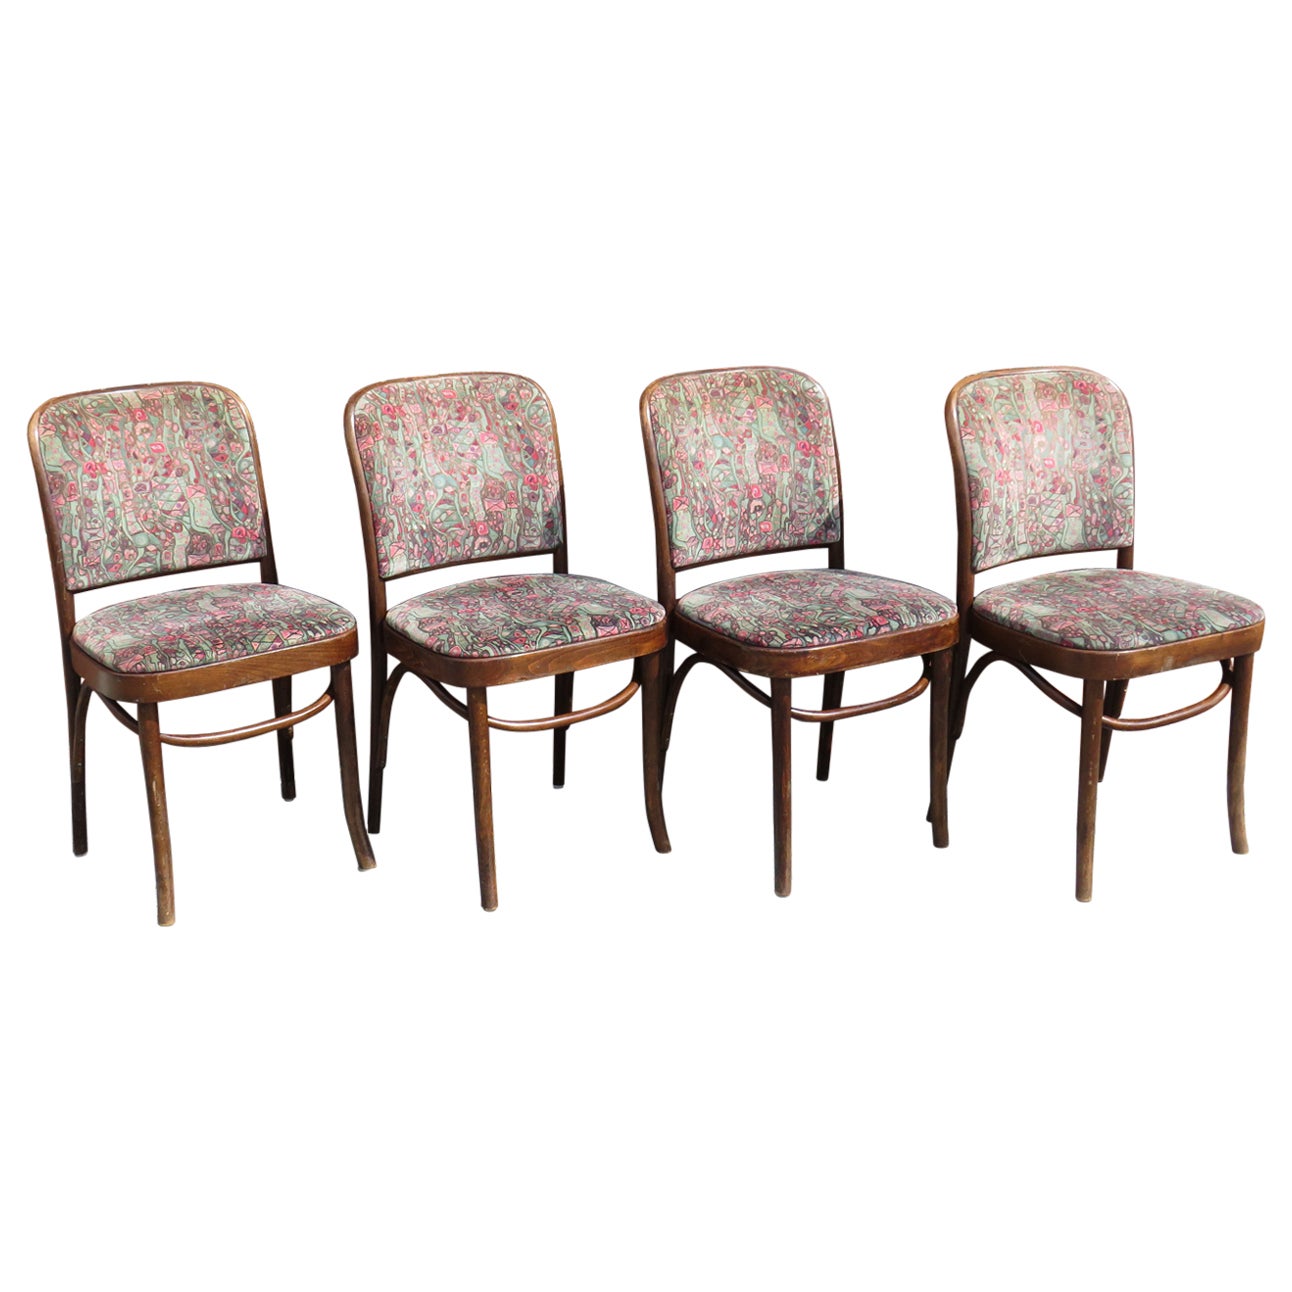 4 chaises Thonet, modèle Prague n° 811, première moitié du 20ème siècle